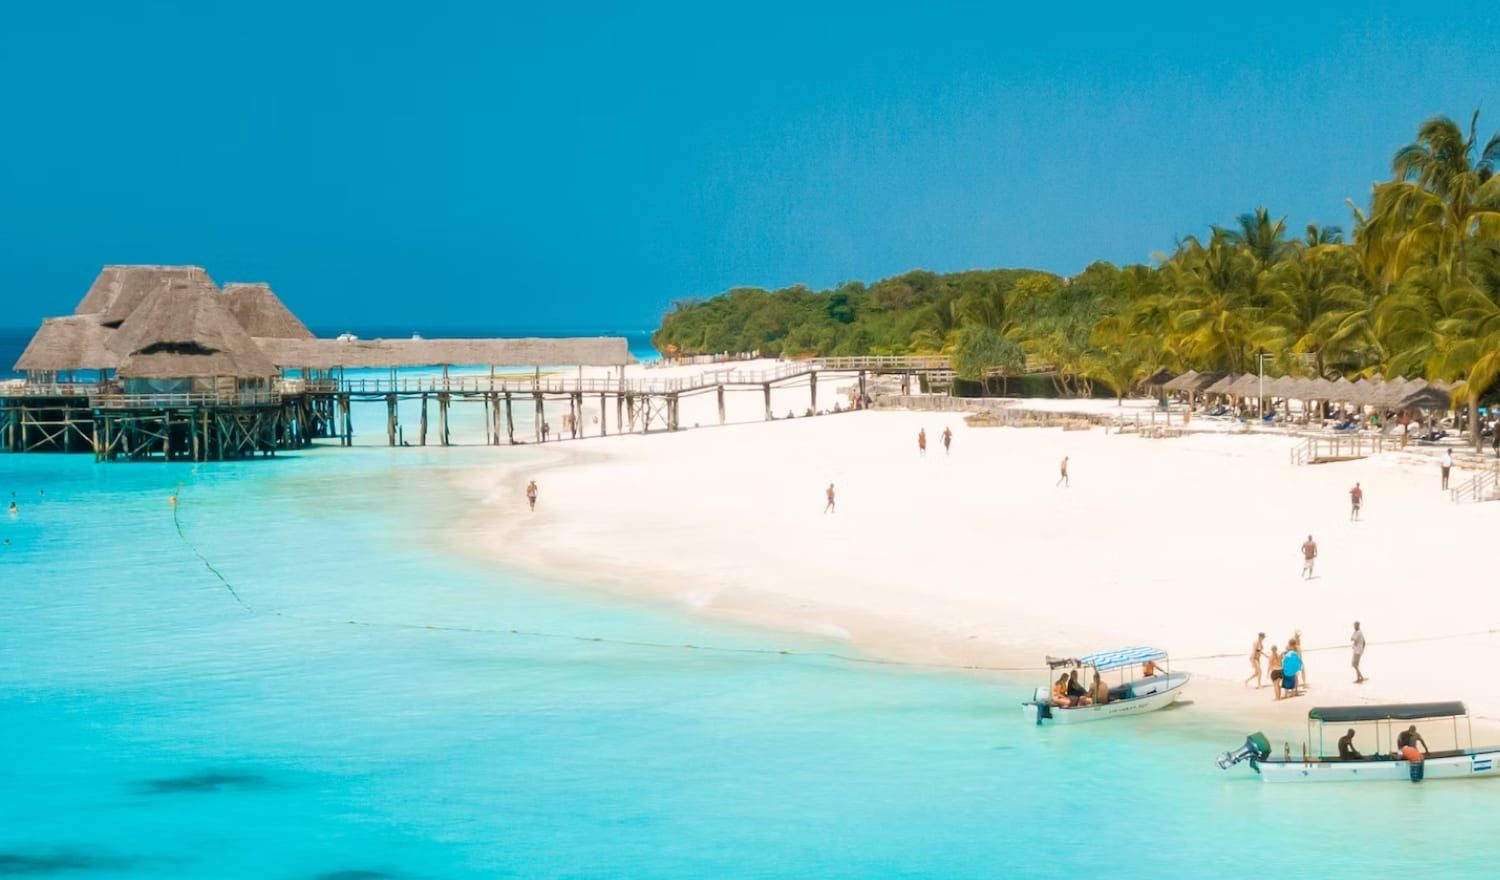 The world-class beaches of Zanzibar.